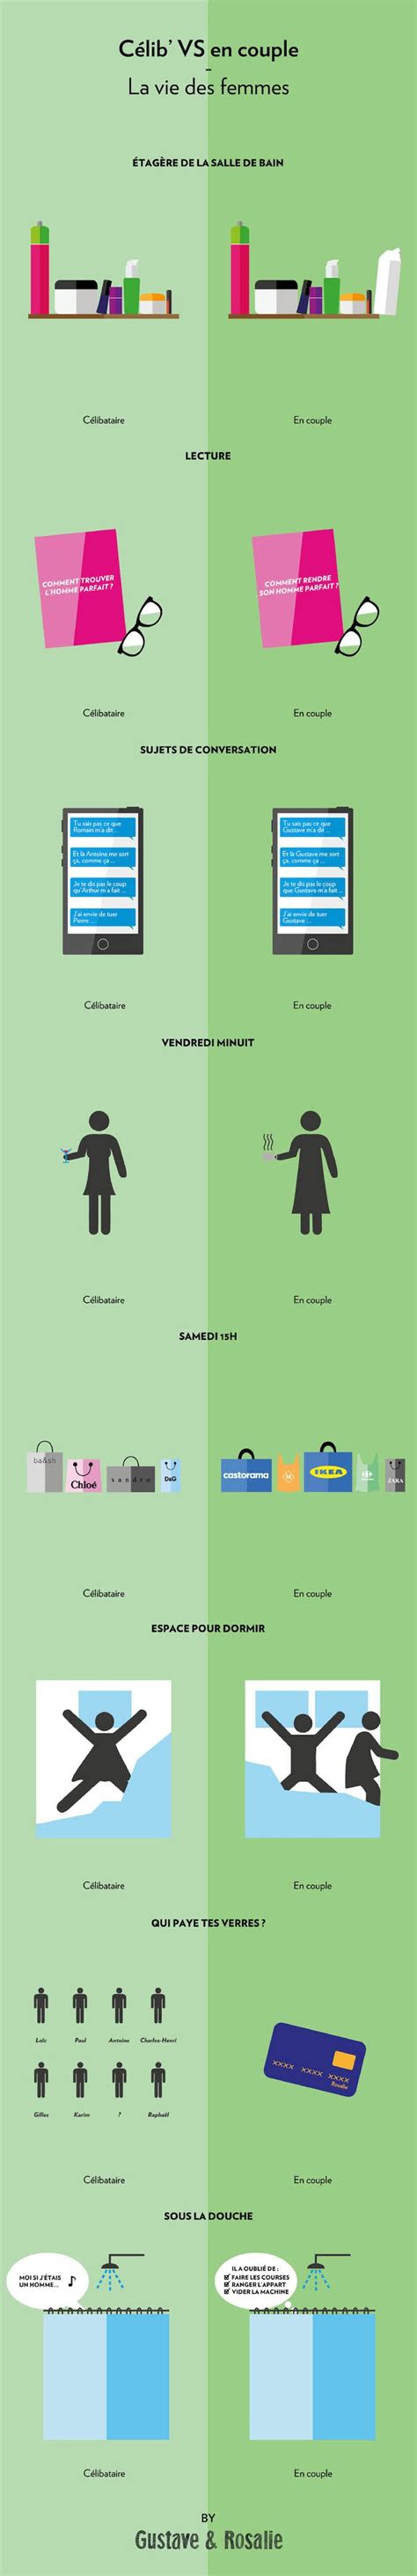 16 illustrations nous montrent les différences entre la vie en couple